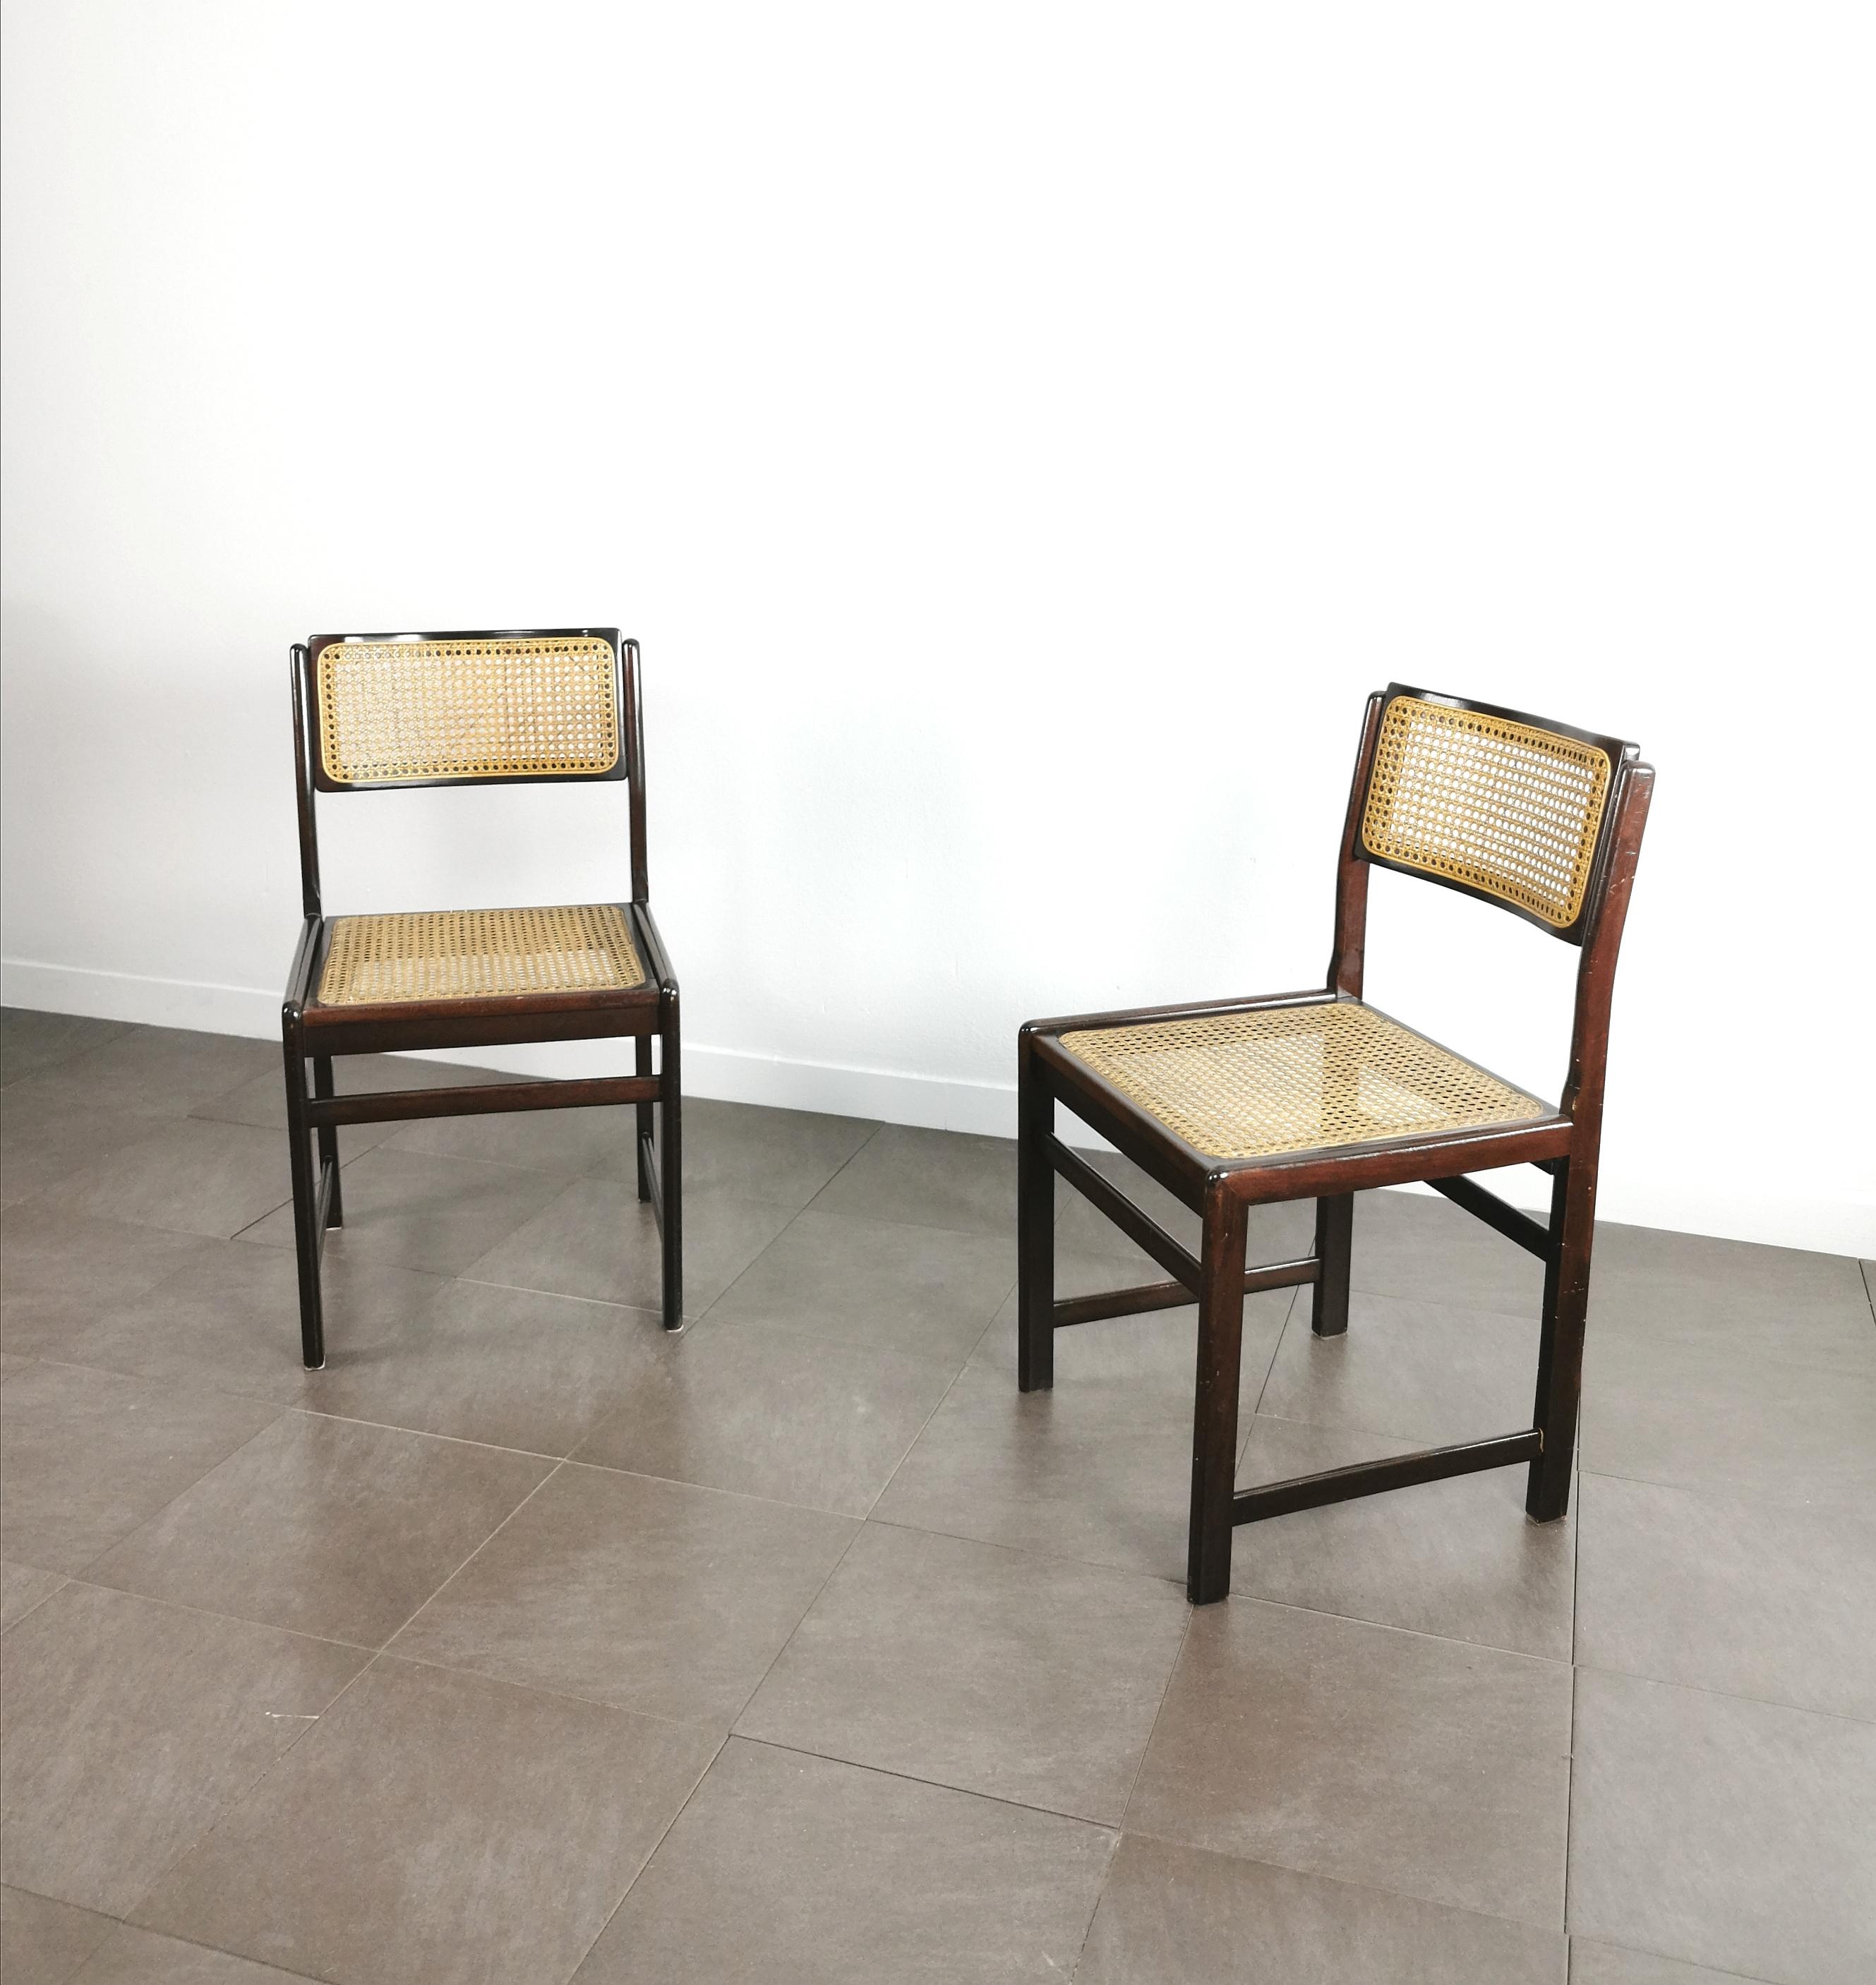 Satz von 2 Esszimmerstühlen, hergestellt in Italien in den 60er Jahren. Jeder einzelne Stuhl war aus Holz mit geschwungener Rückenlehne und einer Sitzfläche und Rückenlehne aus Wiener Stroh gefertigt.


Hinweis: Wir bemühen uns, unseren Kunden auch